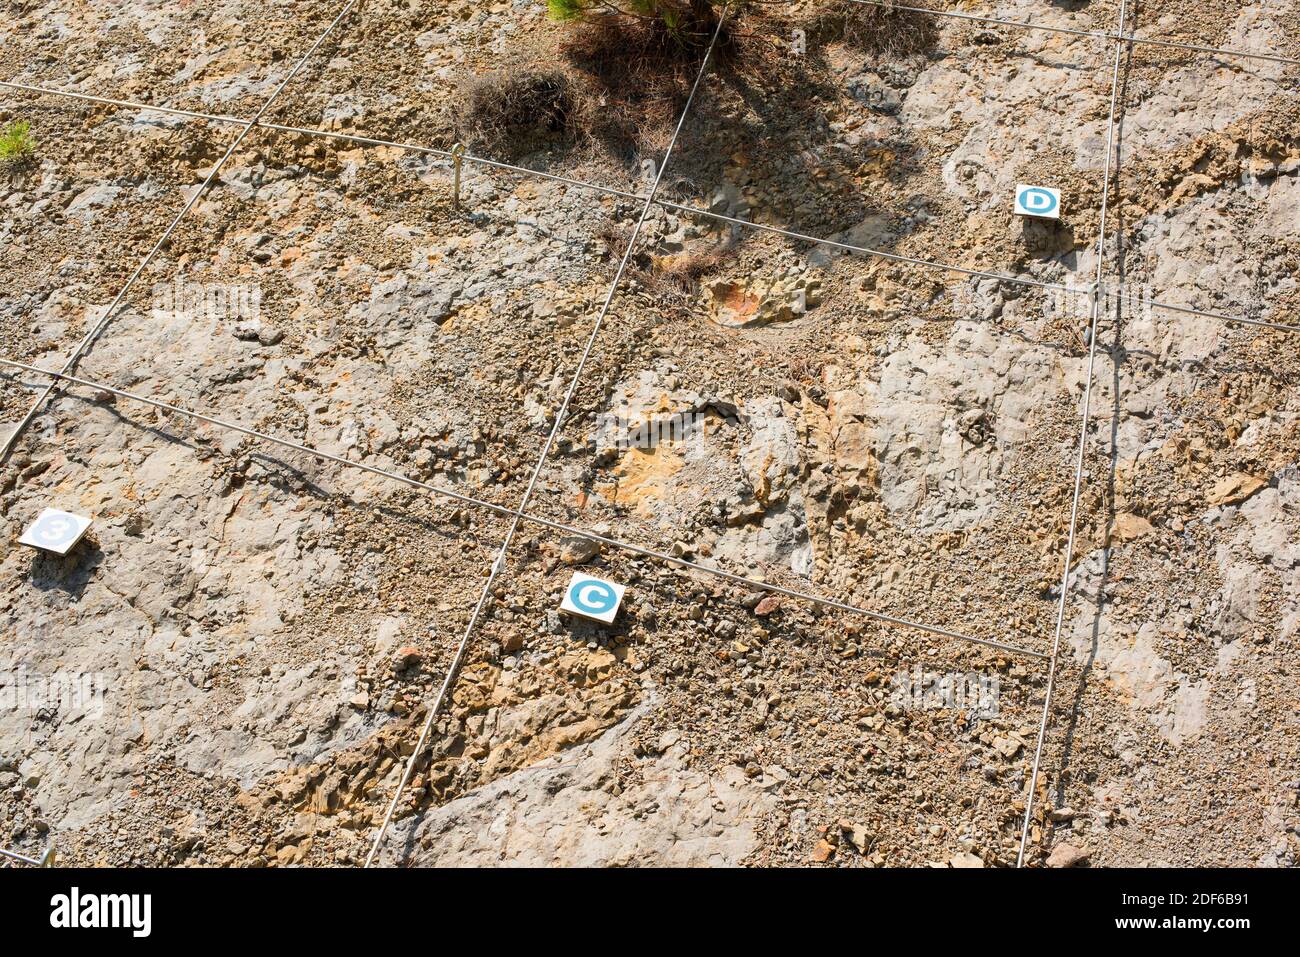 Ichnofossiles ou traces de fossiles de vignettes de dinosaures dans le site paléontologique de Coll de Nargo, Lleida, Catalogne, Espagne. Banque D'Images